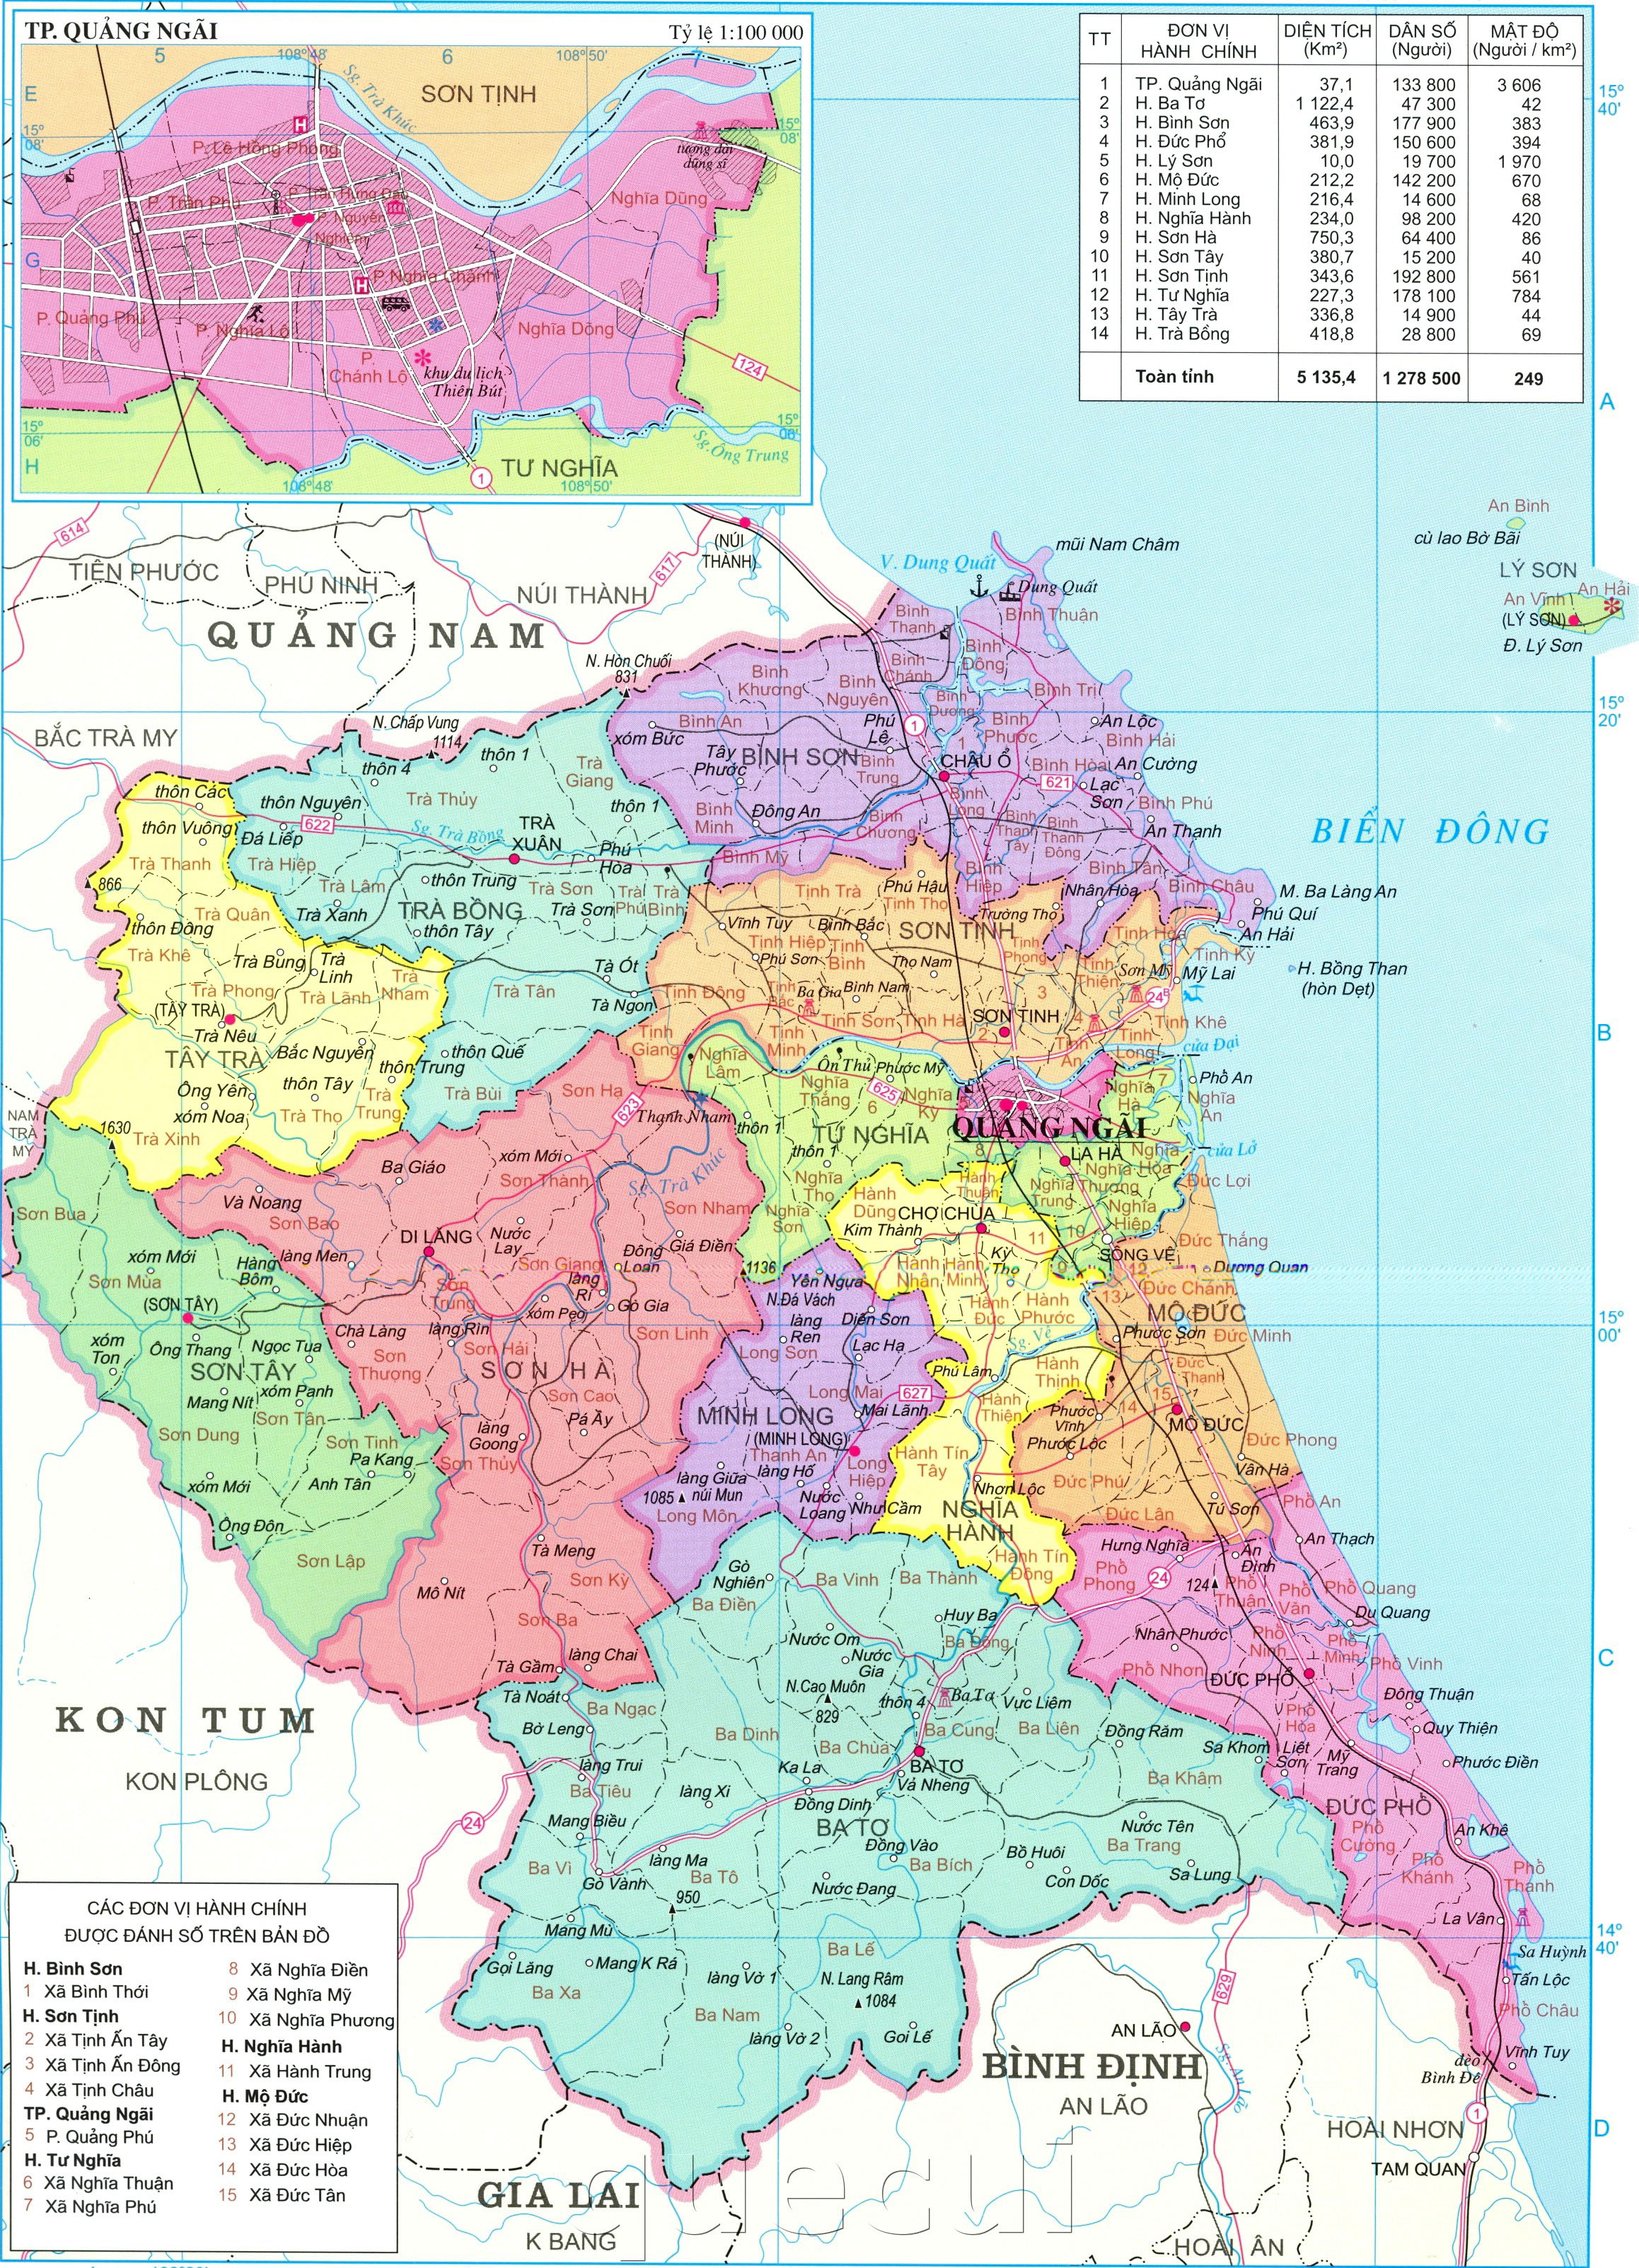 Xem Bản đồ về tỉnh Quảng Ngãi chính xác nhất